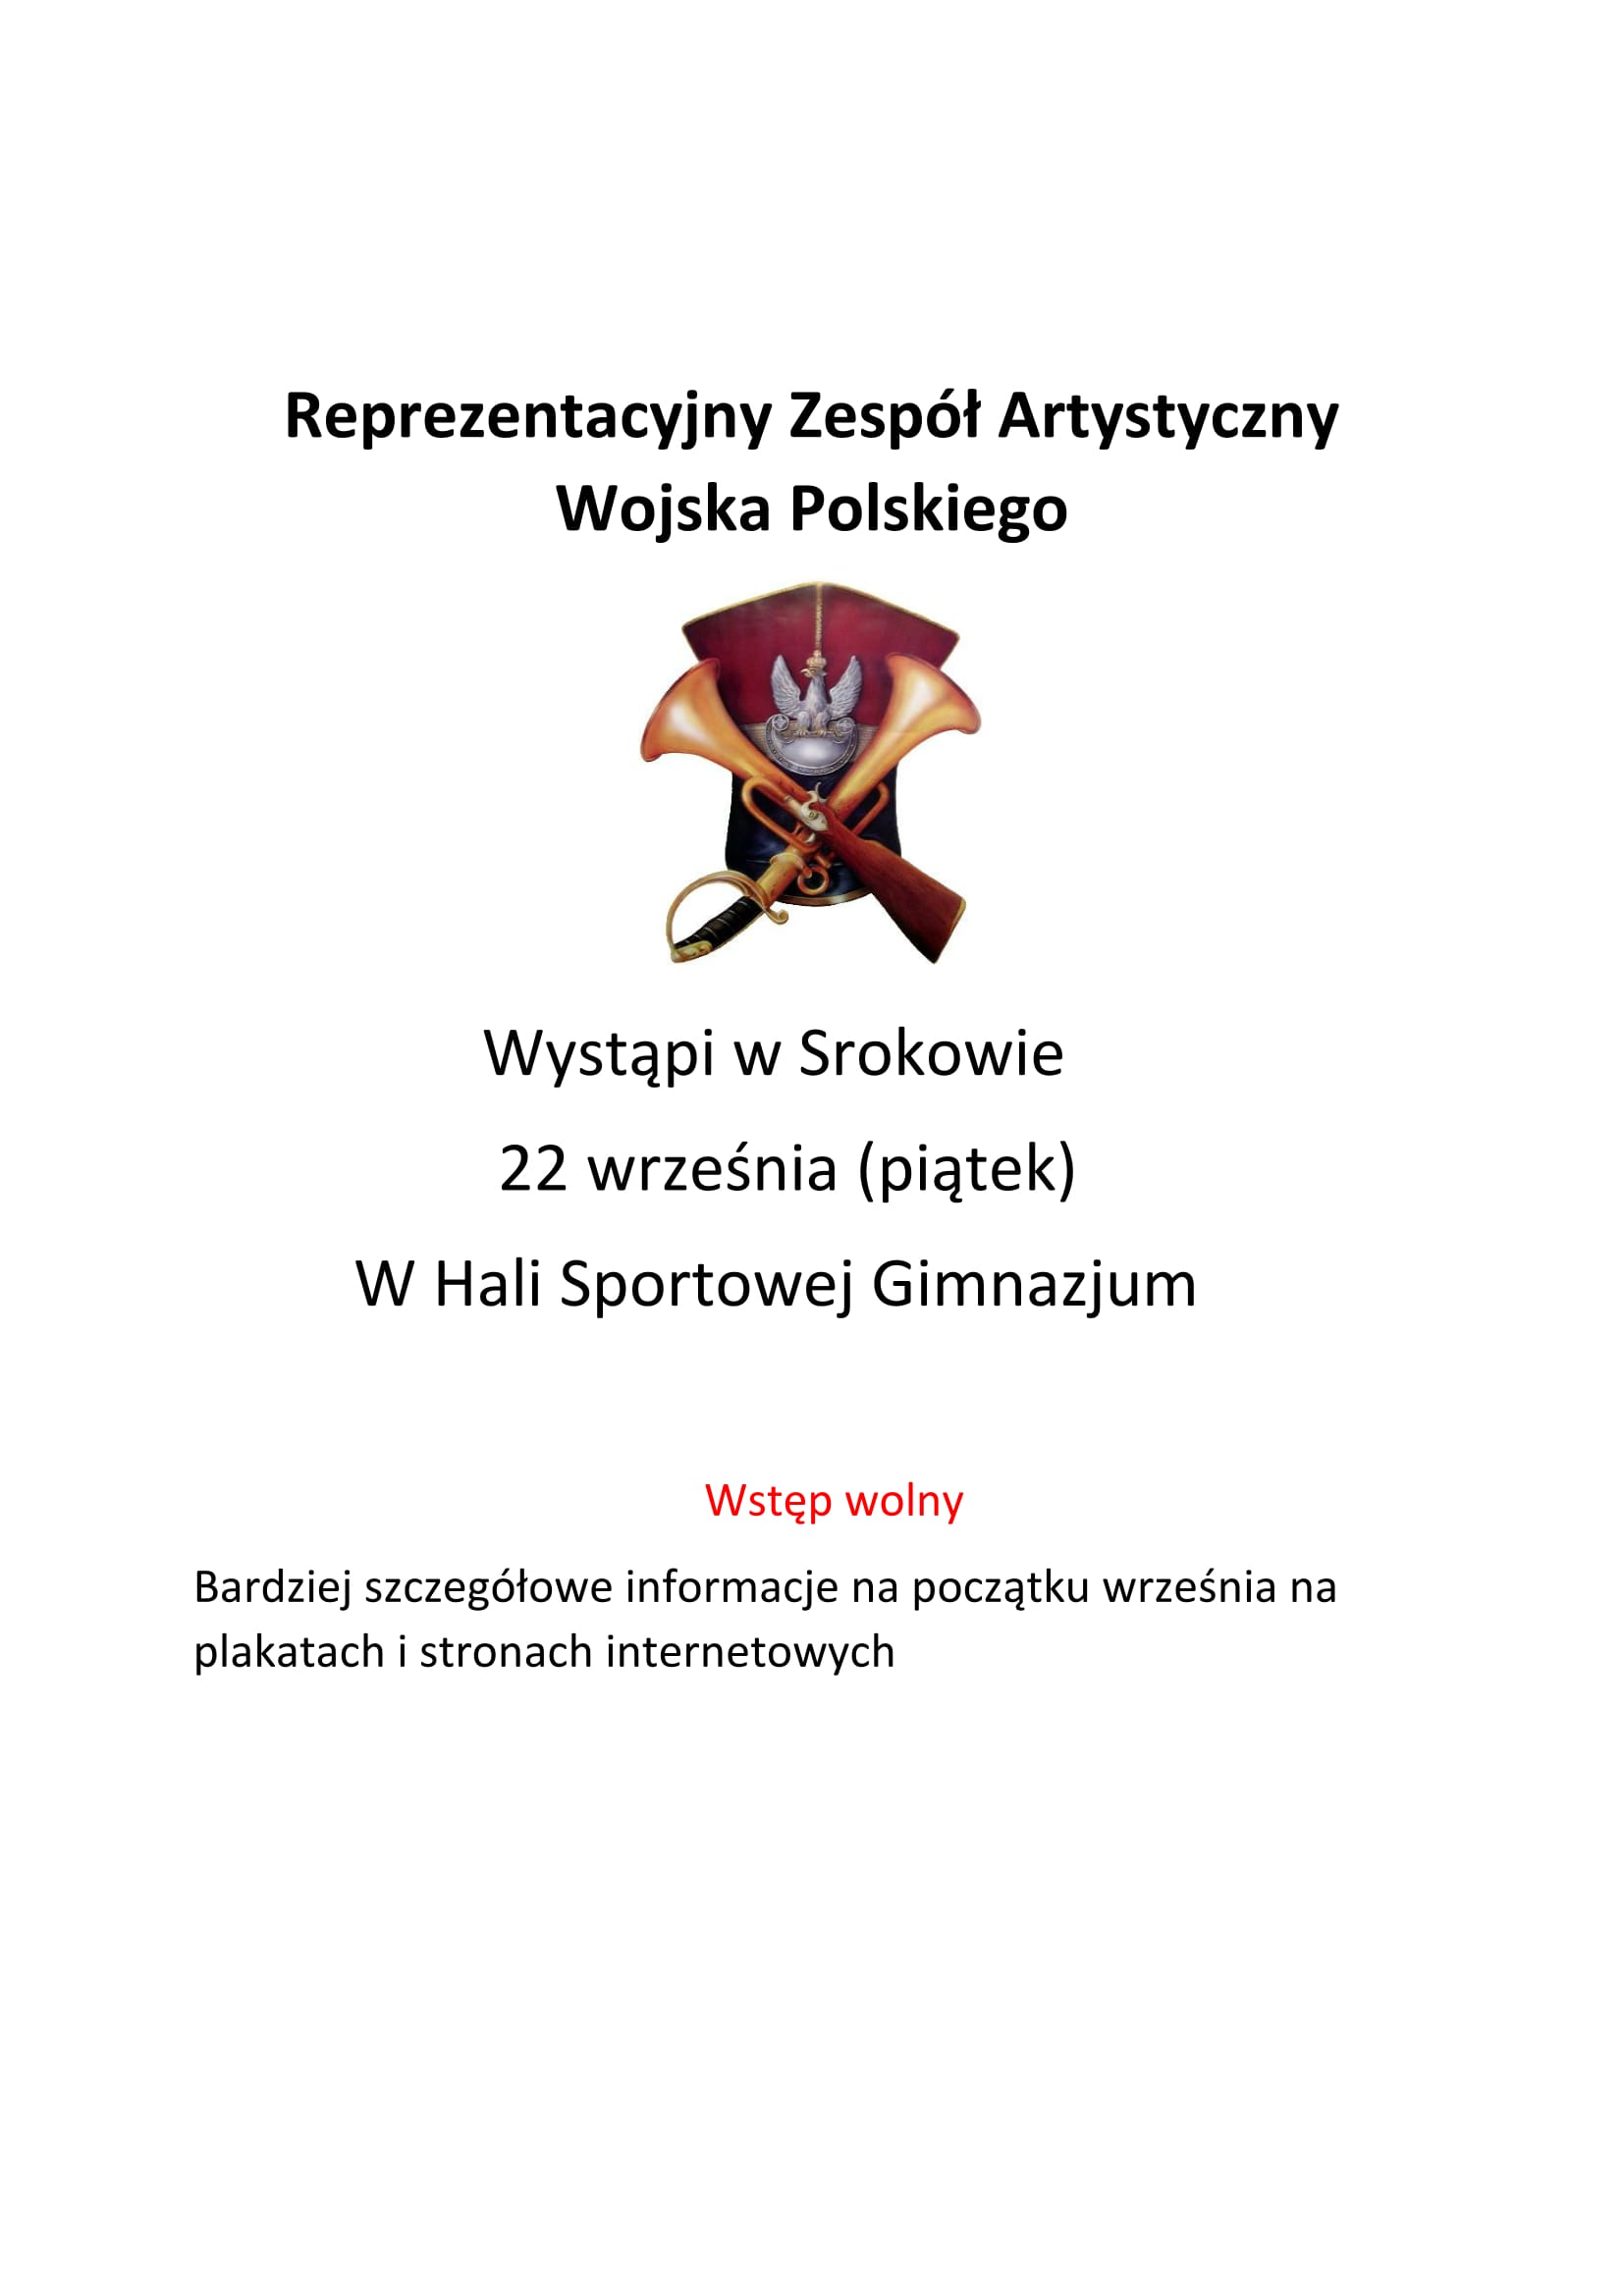 Reprezentacyjny Zespół Artystyczny Wojska Polskiego 1